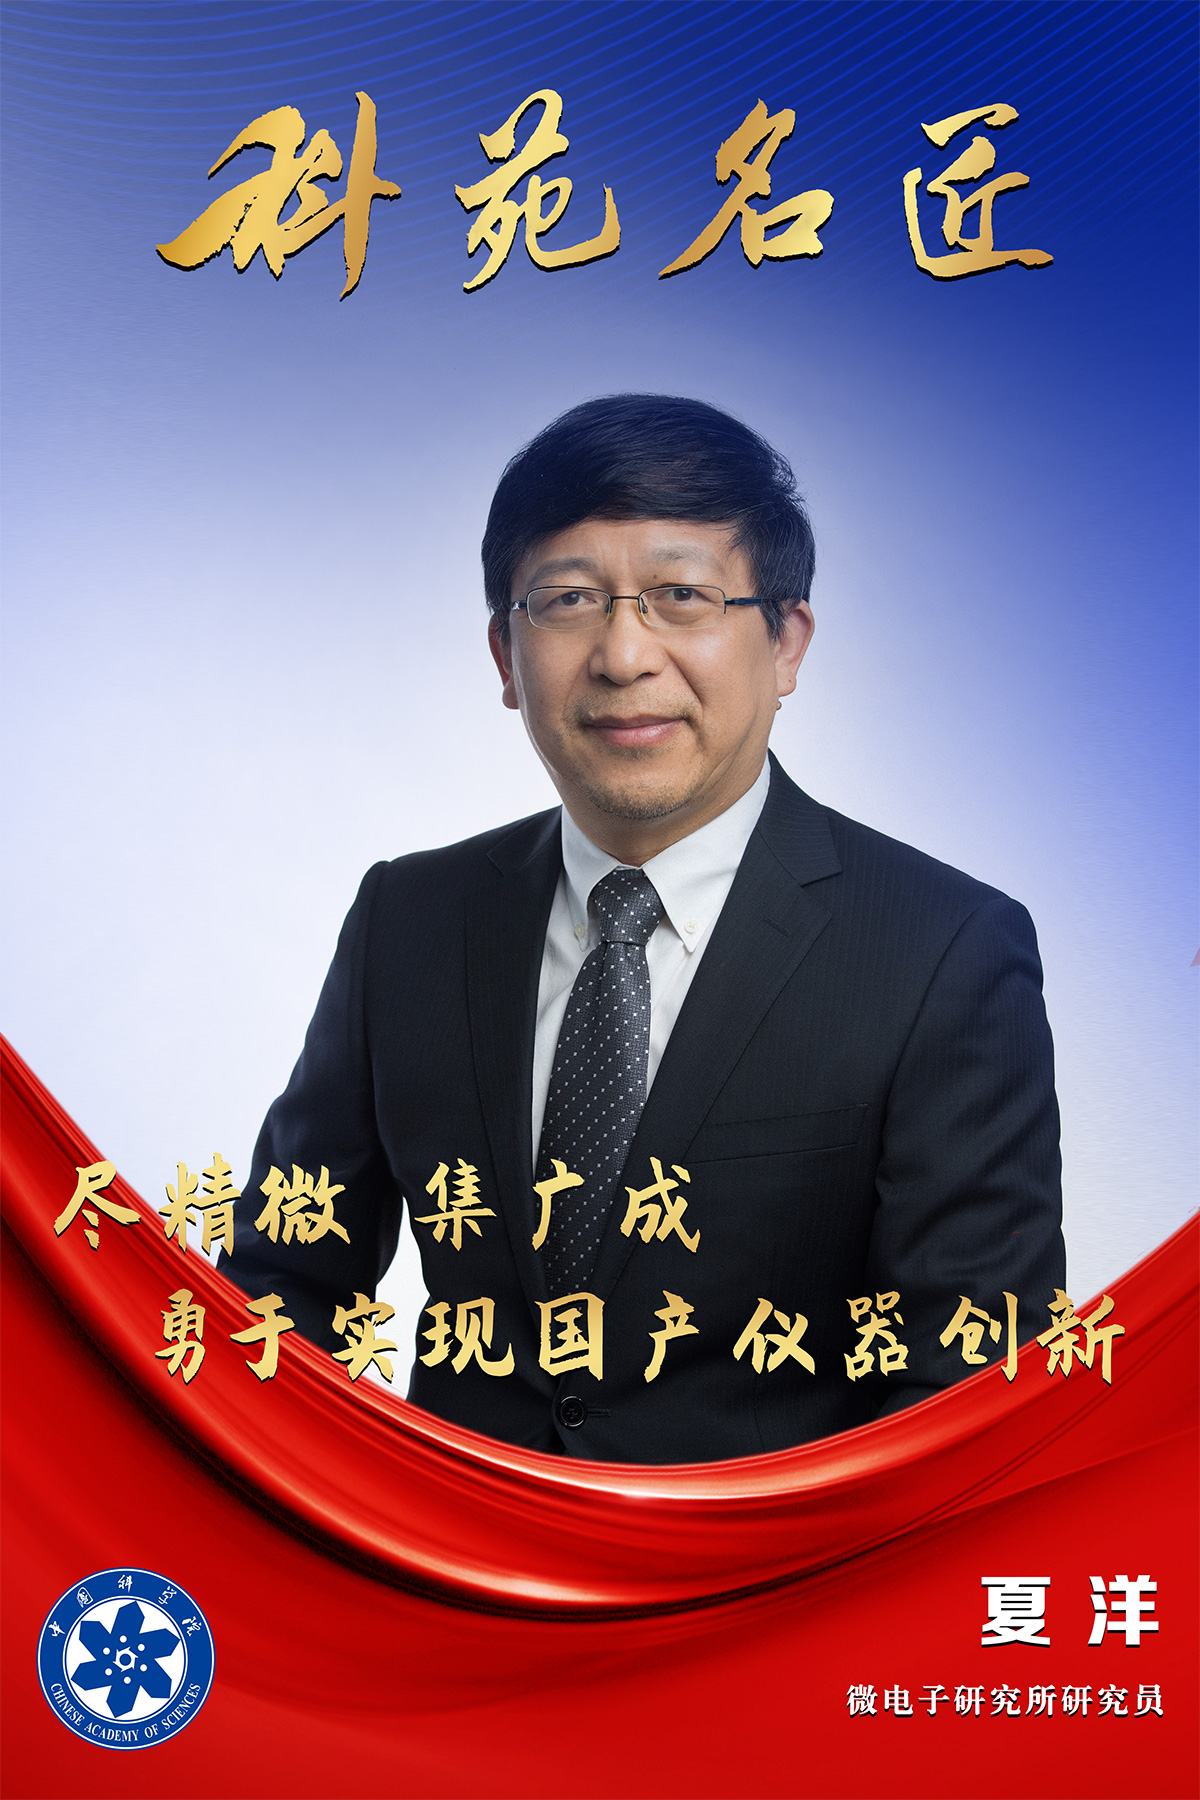 科民電子董事長夏洋榮獲第三屆中國科學院“科苑名匠”稱號